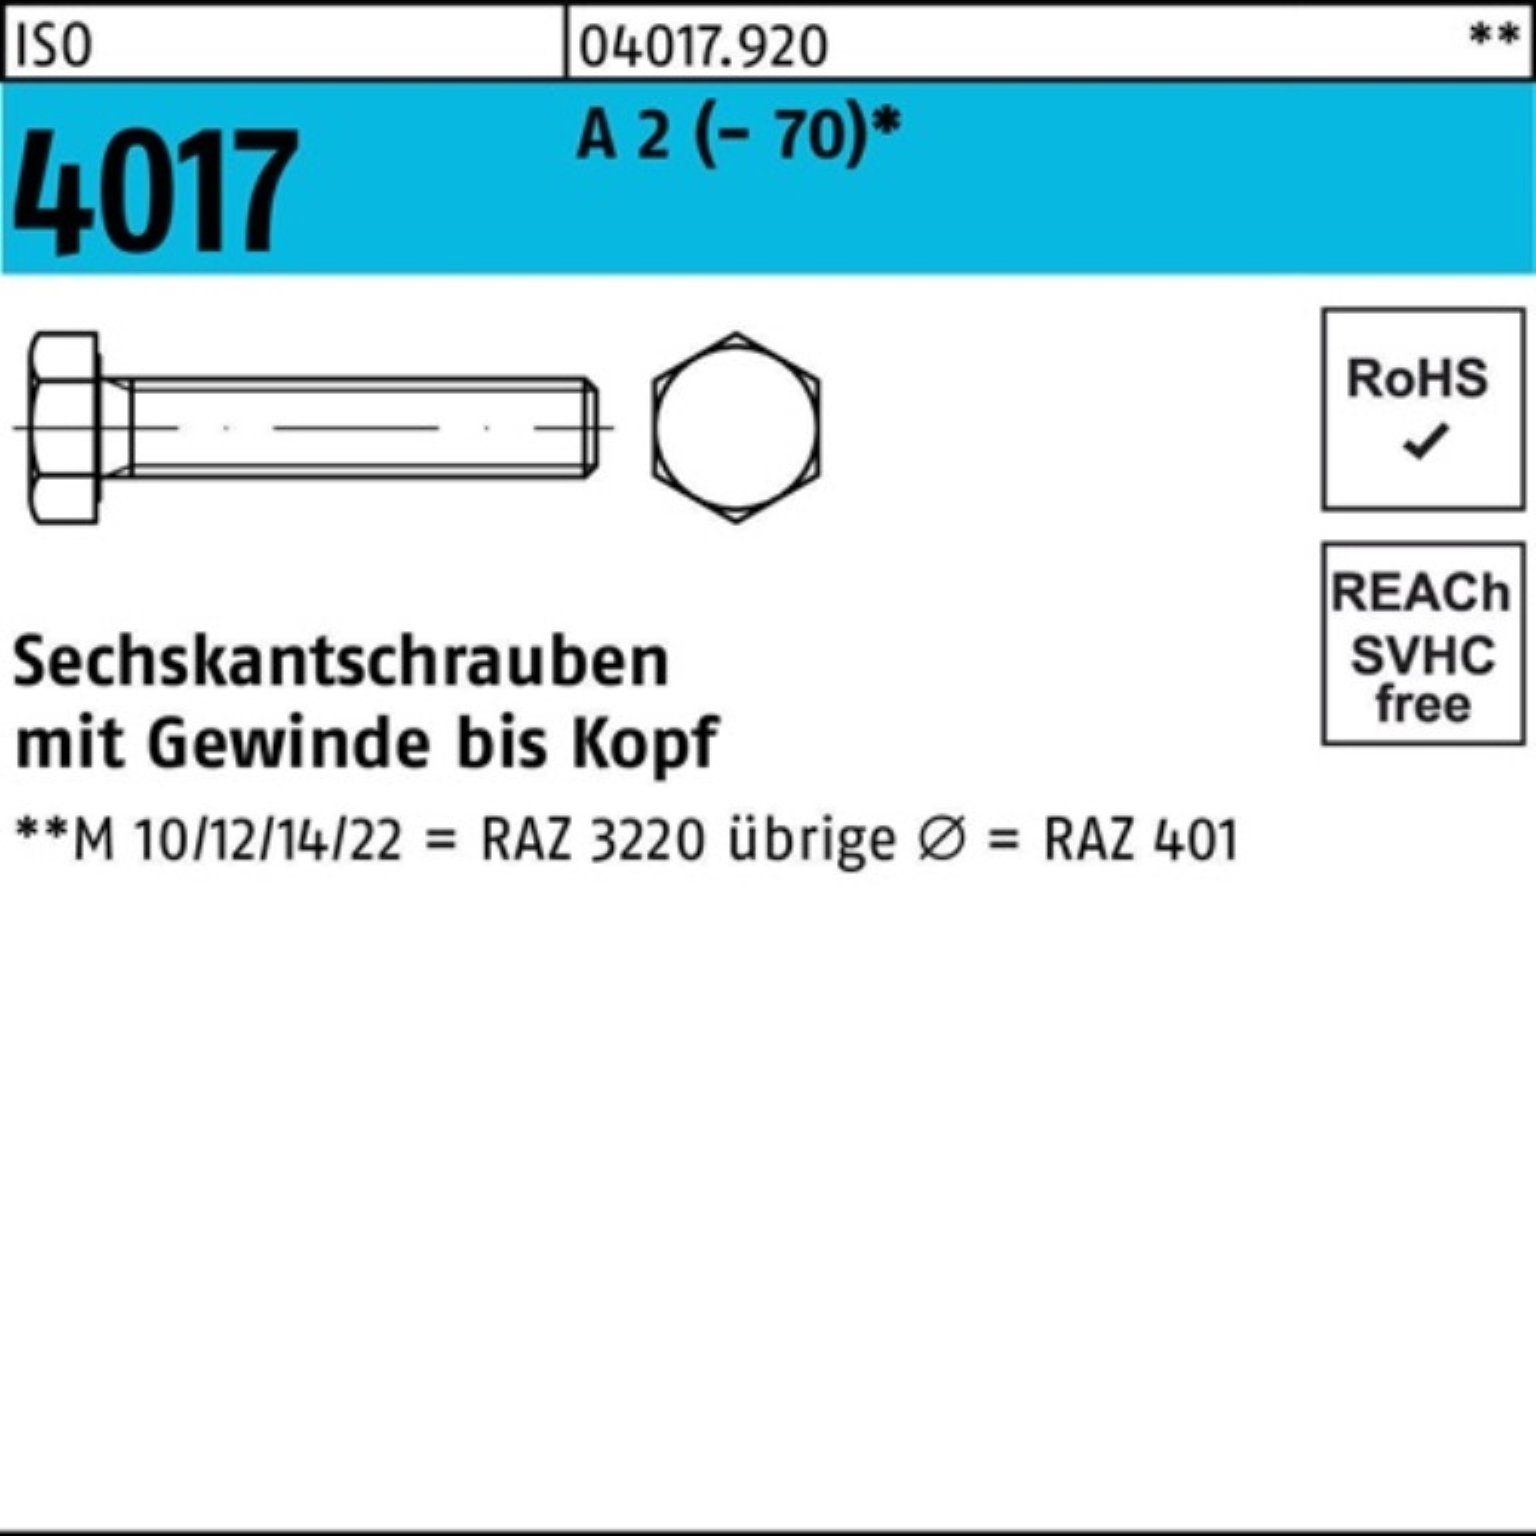 Bufab Sechskantschraube 100er Pack Sechskantschraube ISO 4017 VG M33x 130 A 2 (70) 1 Stück | Schrauben